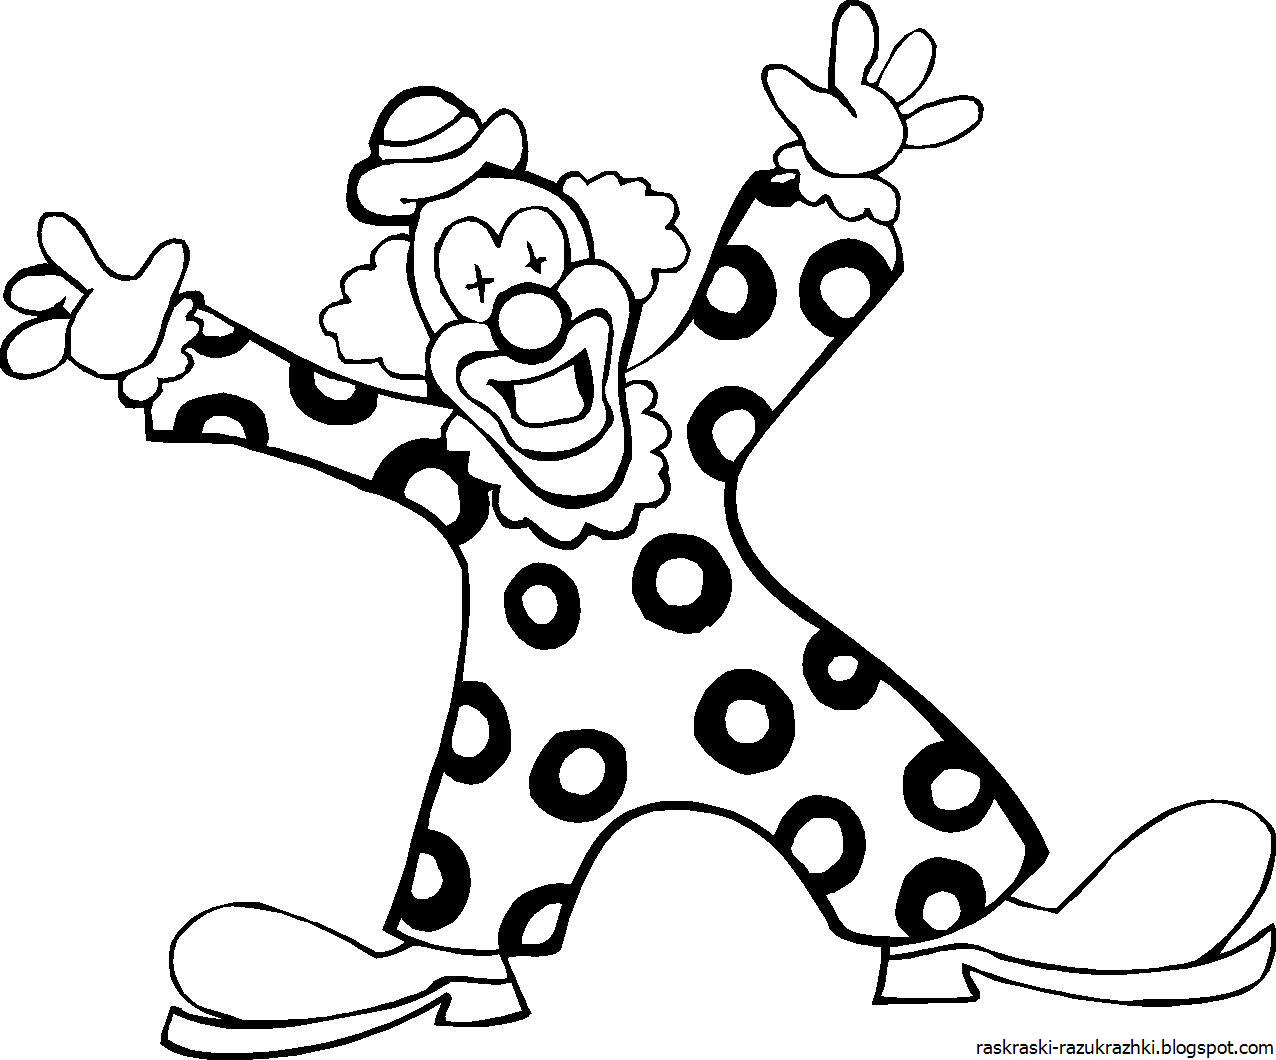 Клоун раскраска для детей 4 5. Клоун раскраска. Клоун раскраска для детей. Трафарет клоуна для раскрашивания. Клоун картинка для детей раскраска.